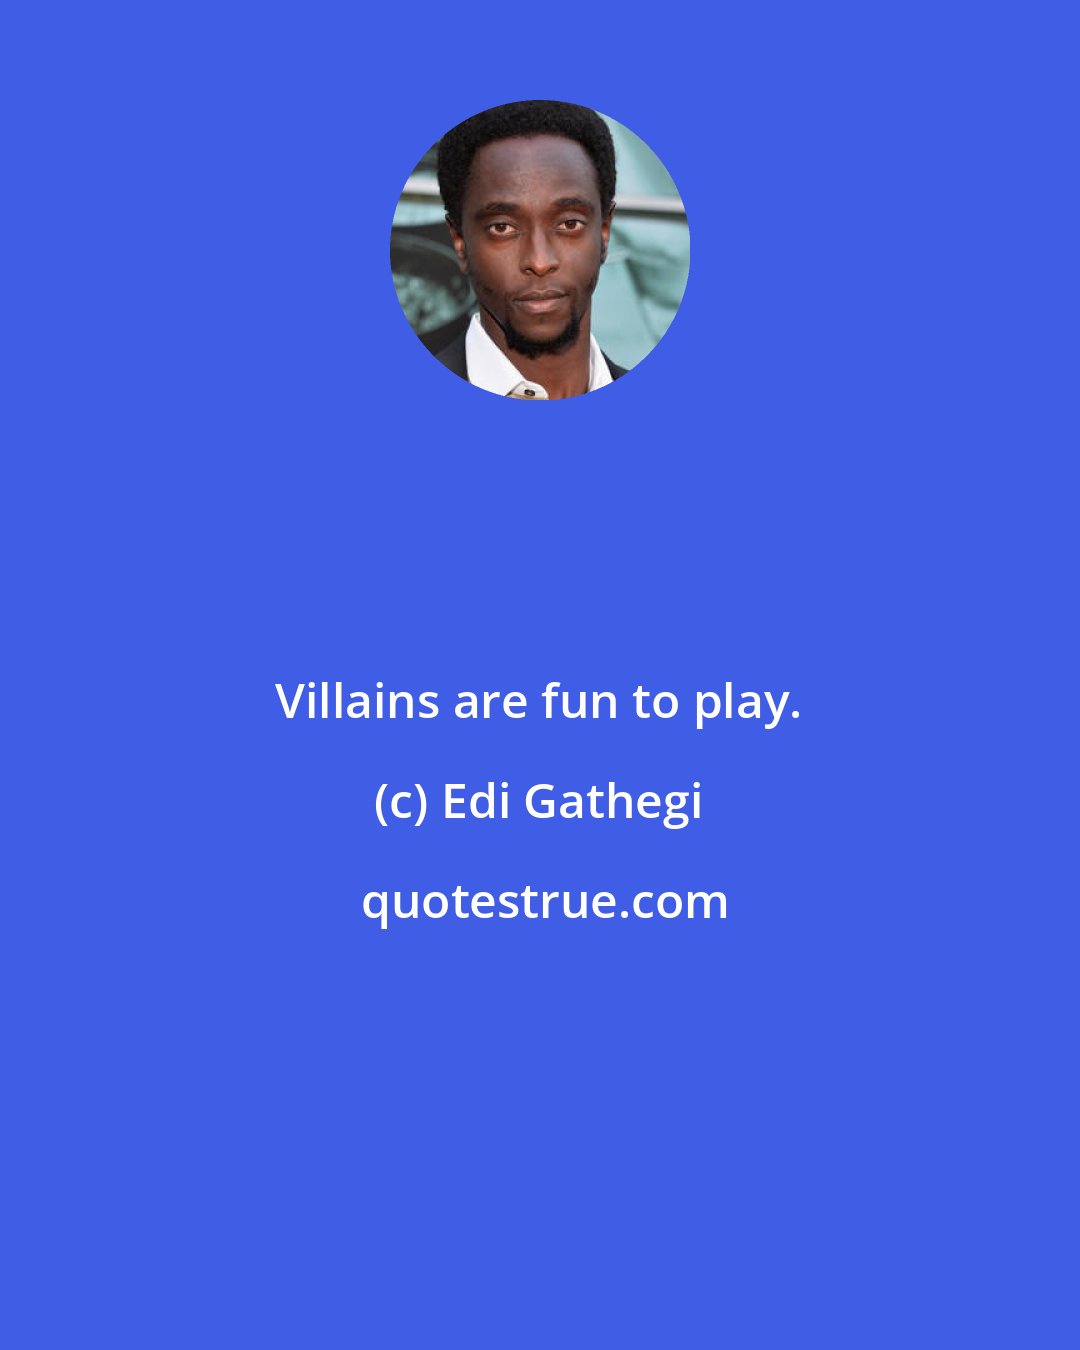 Edi Gathegi: Villains are fun to play.